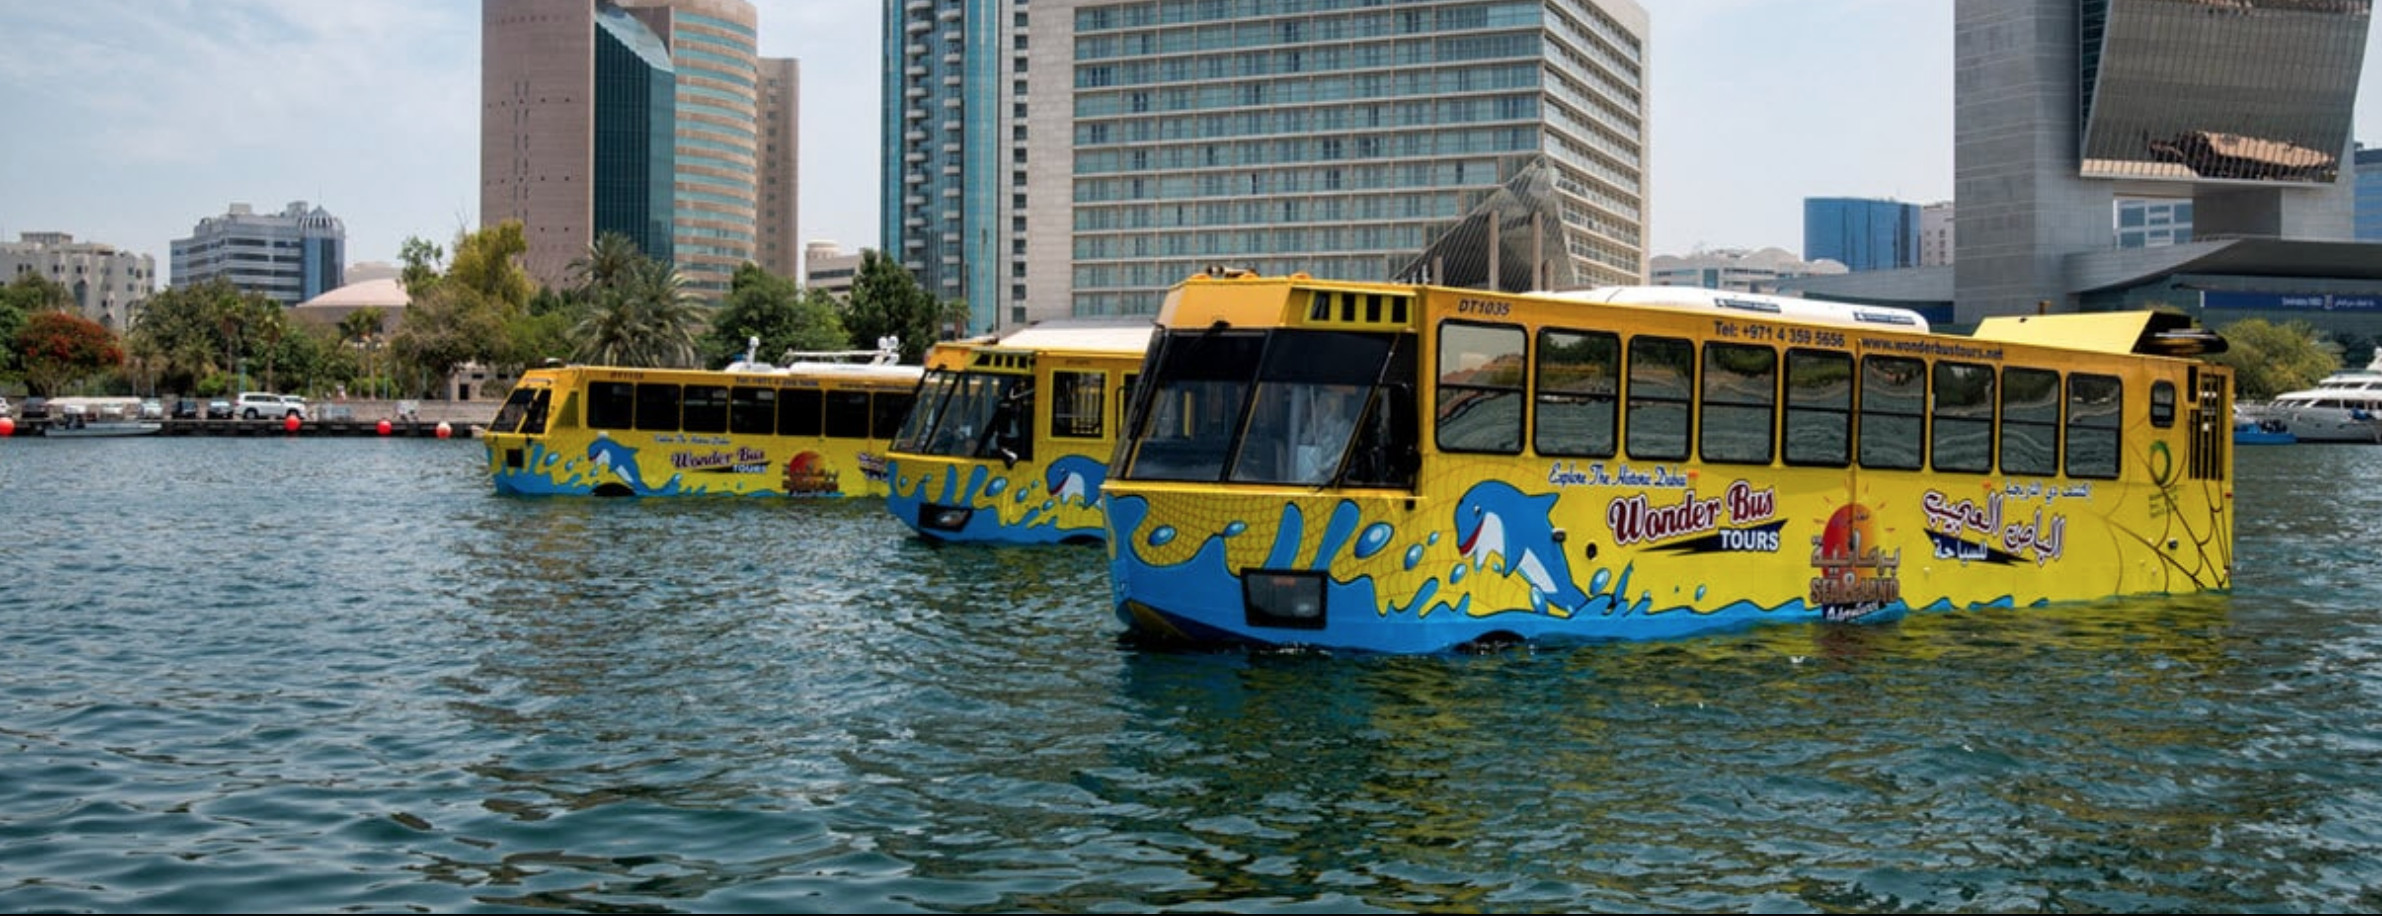 Dubai Wonder Bus Tour